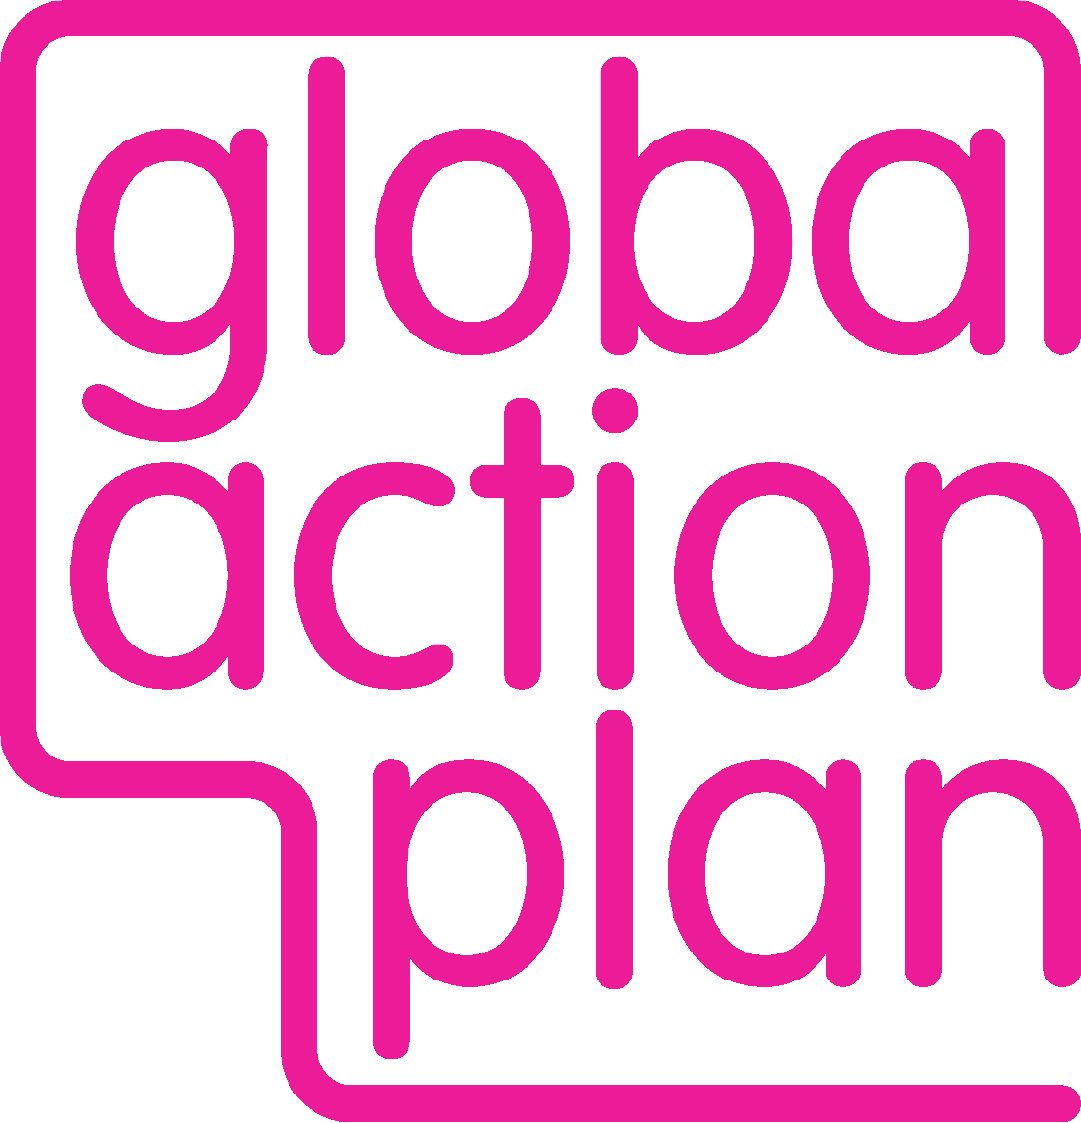 Global Action Plan logo